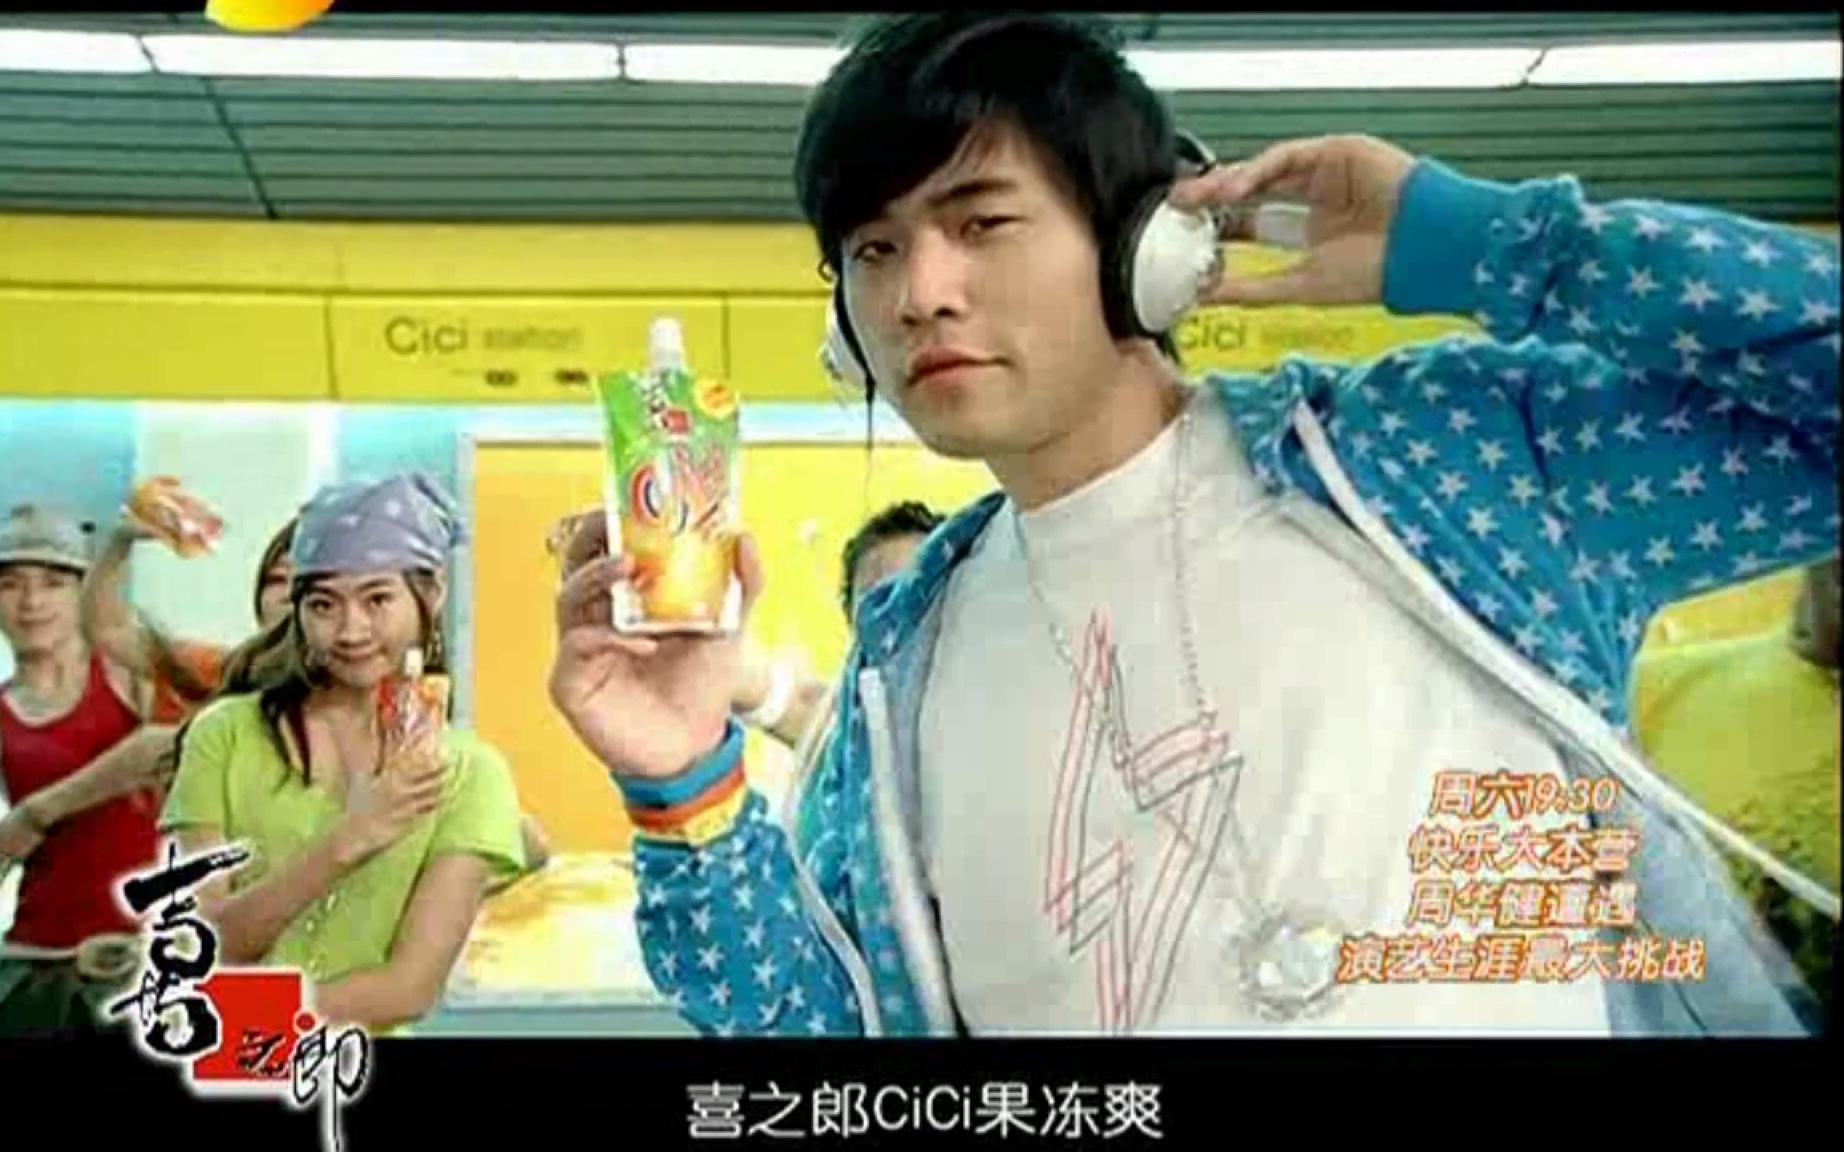 喜之郎奶茶广告图片